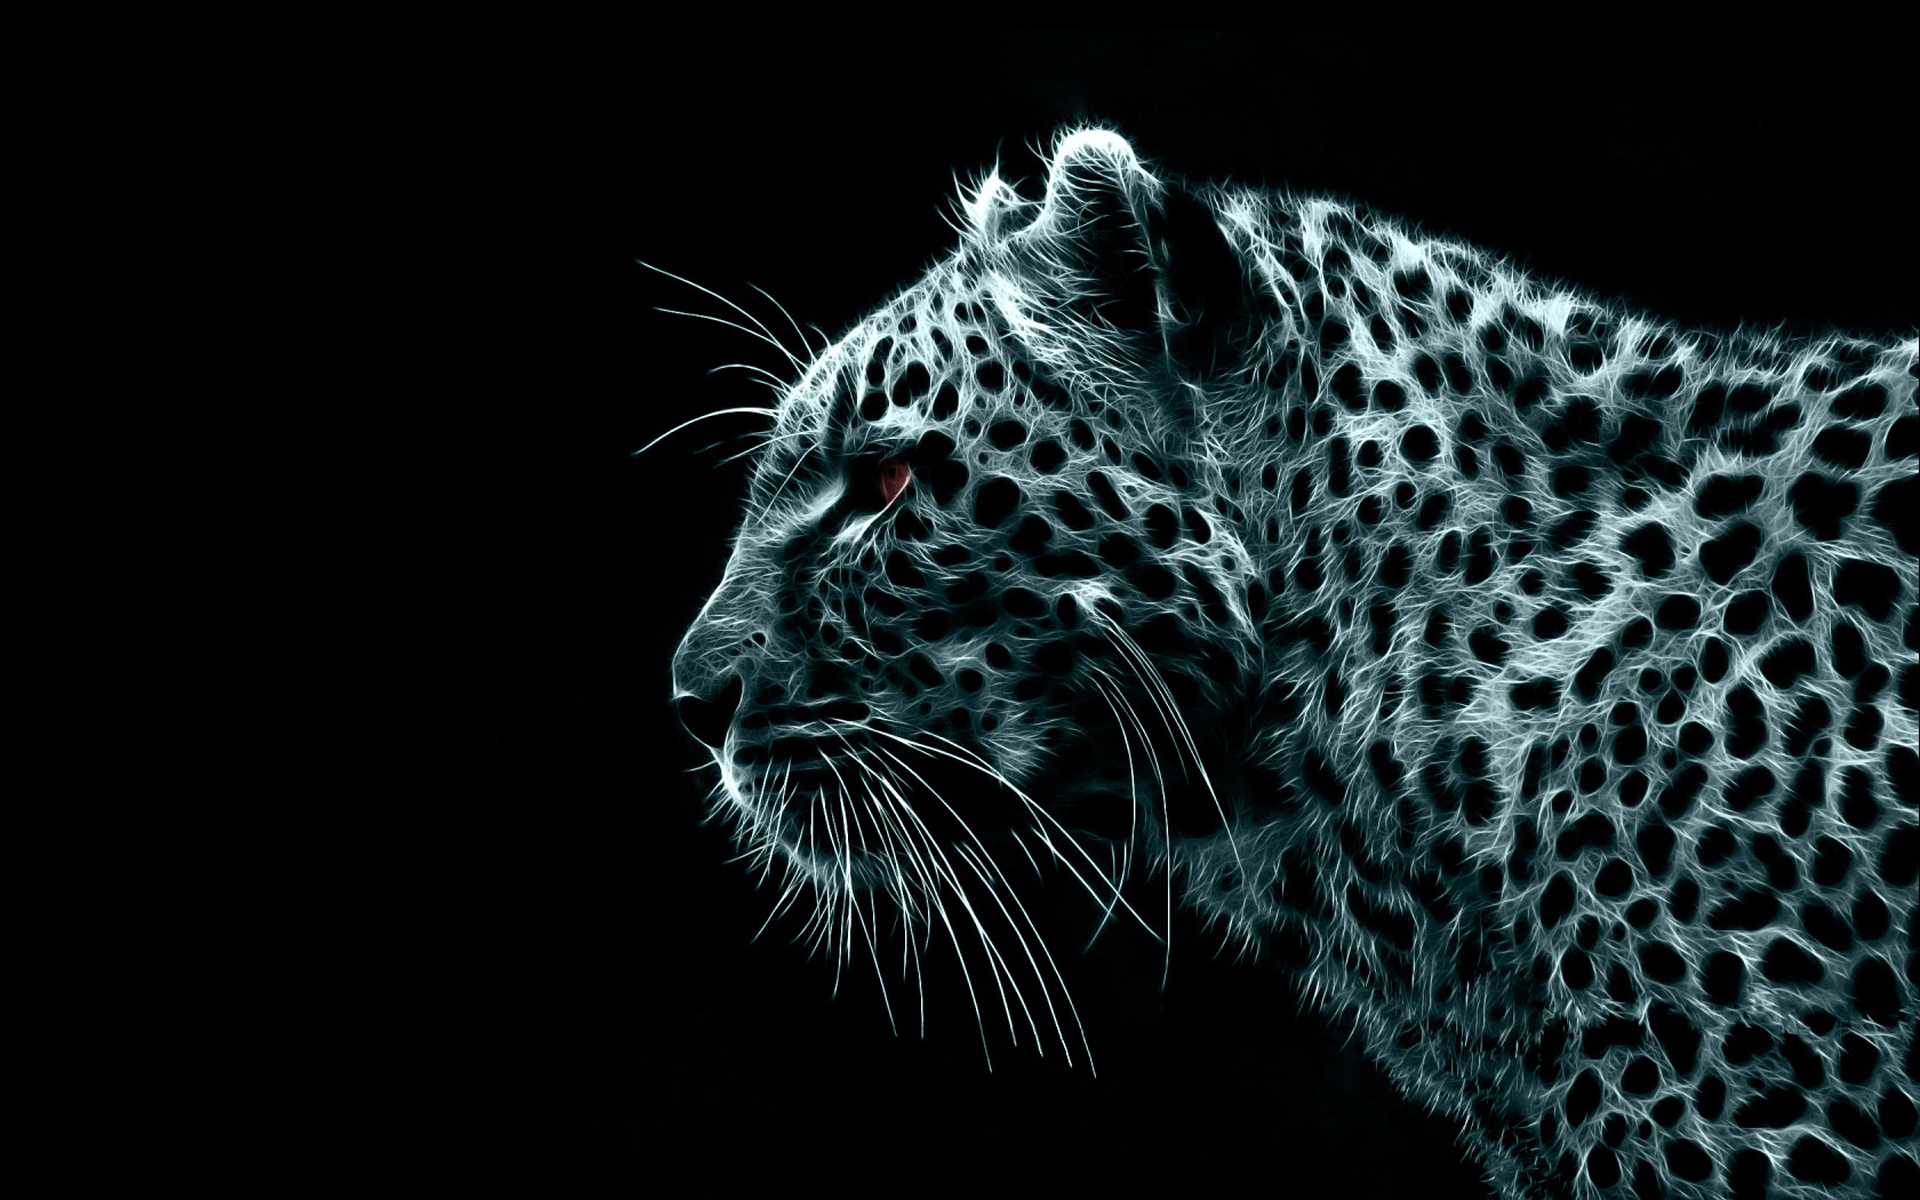 digital, Fractalius, leopards, black background - desktop wallpaper